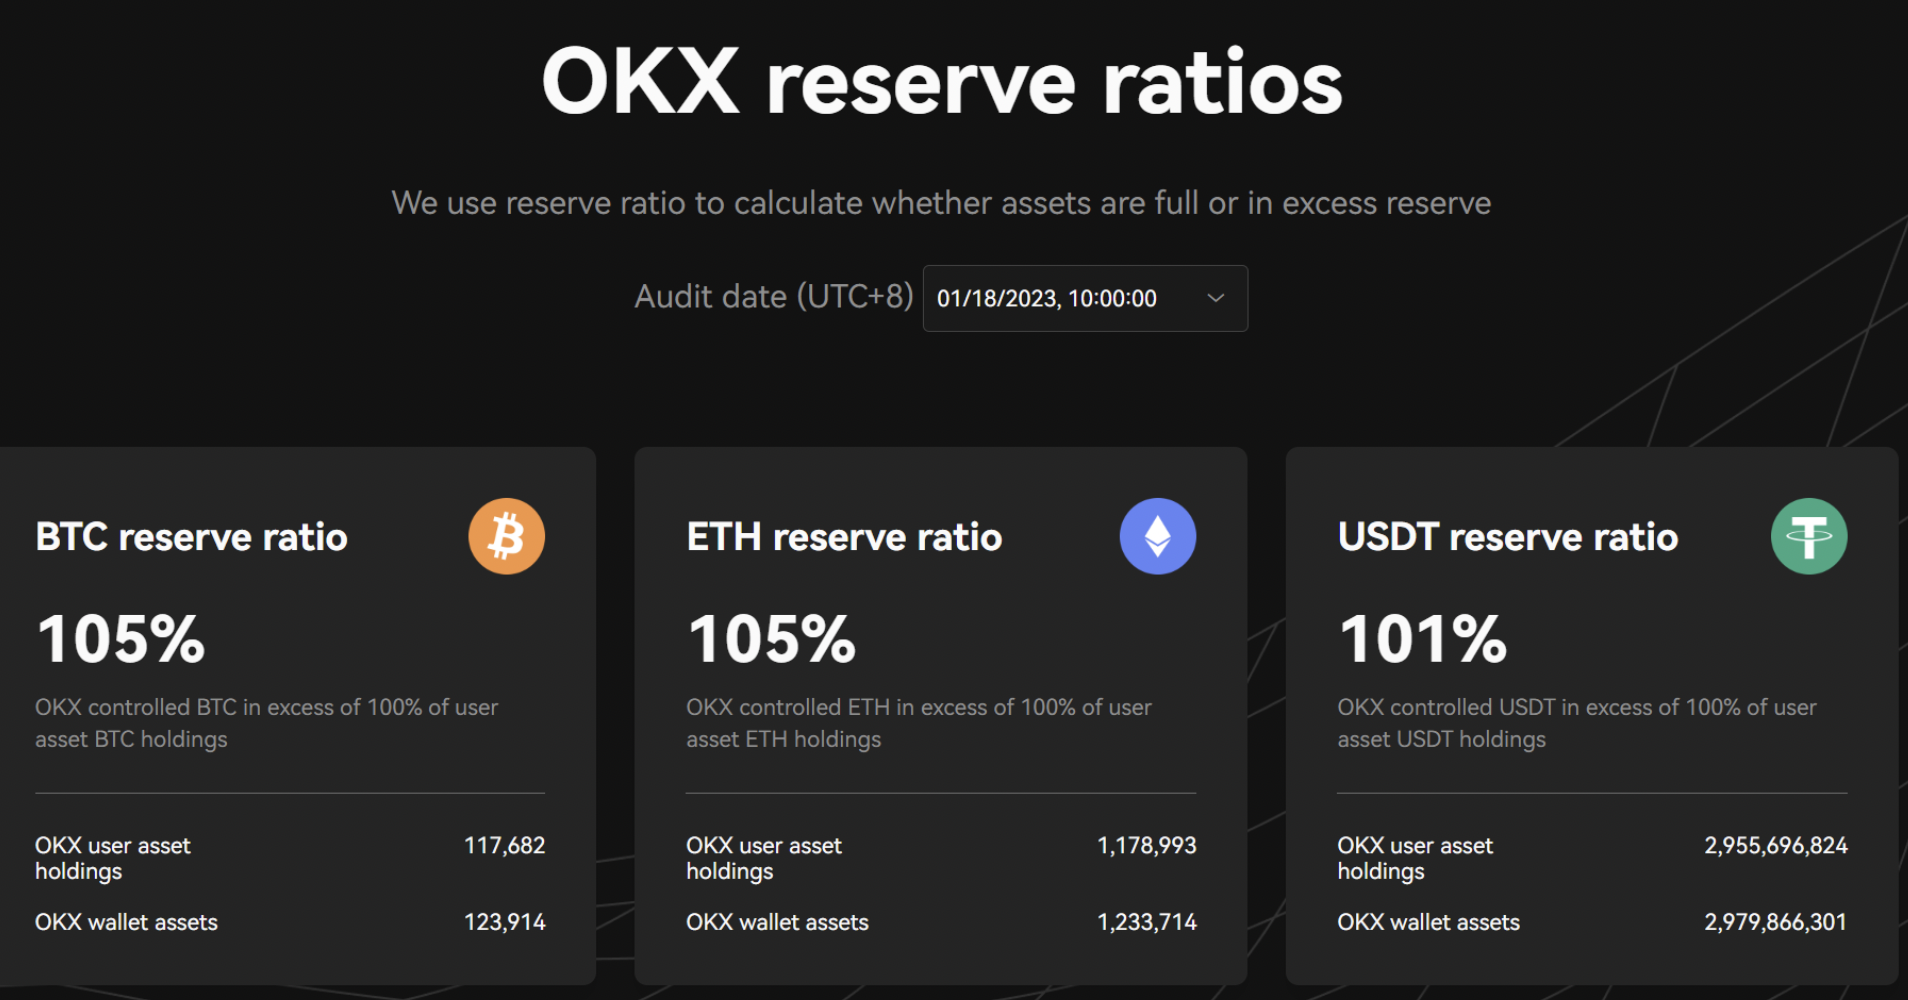 OKX reserve ratios